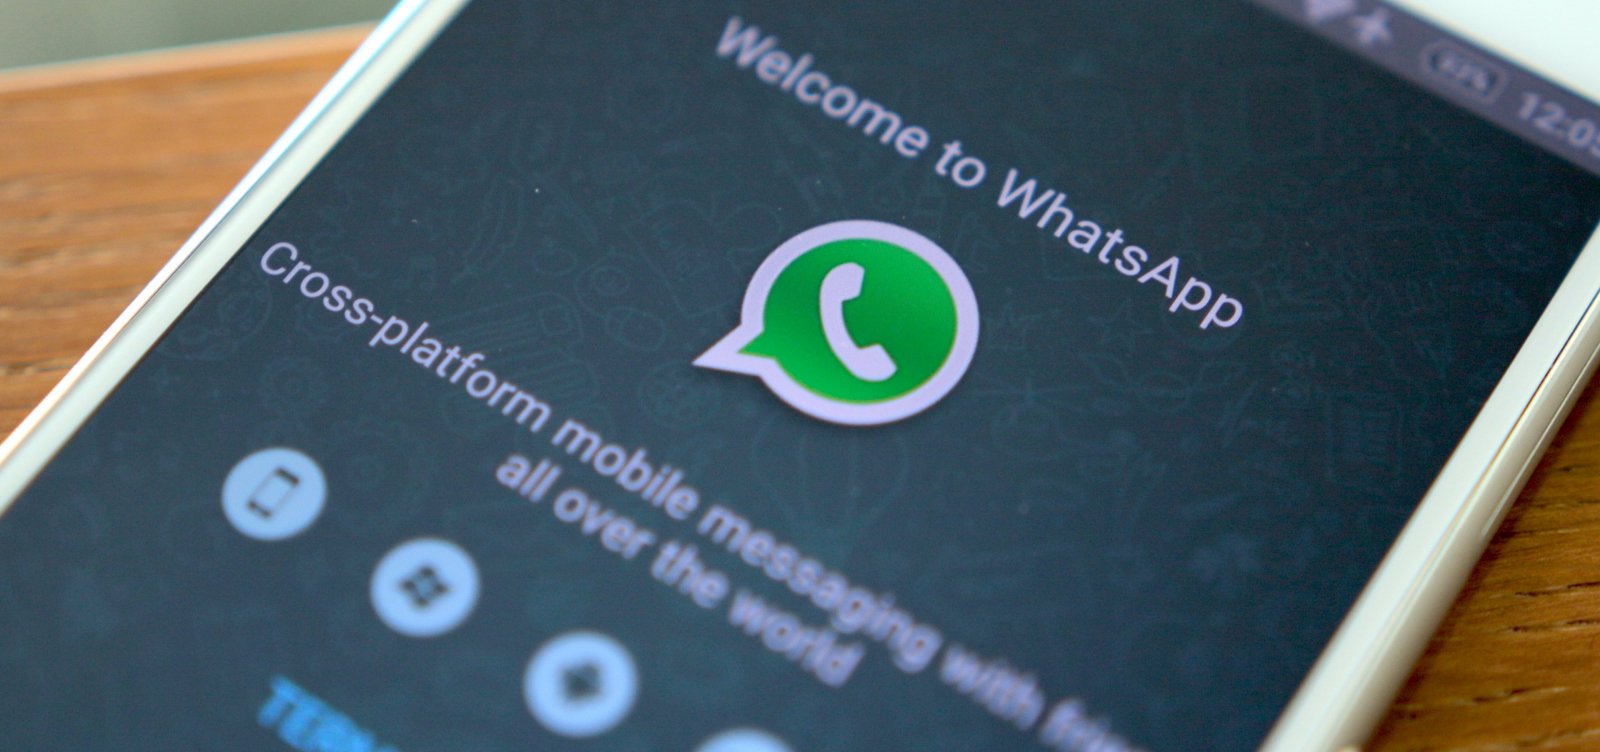 WhatsApp não terá como limitar número de encaminhamentos de mensagens antes do 2º turno